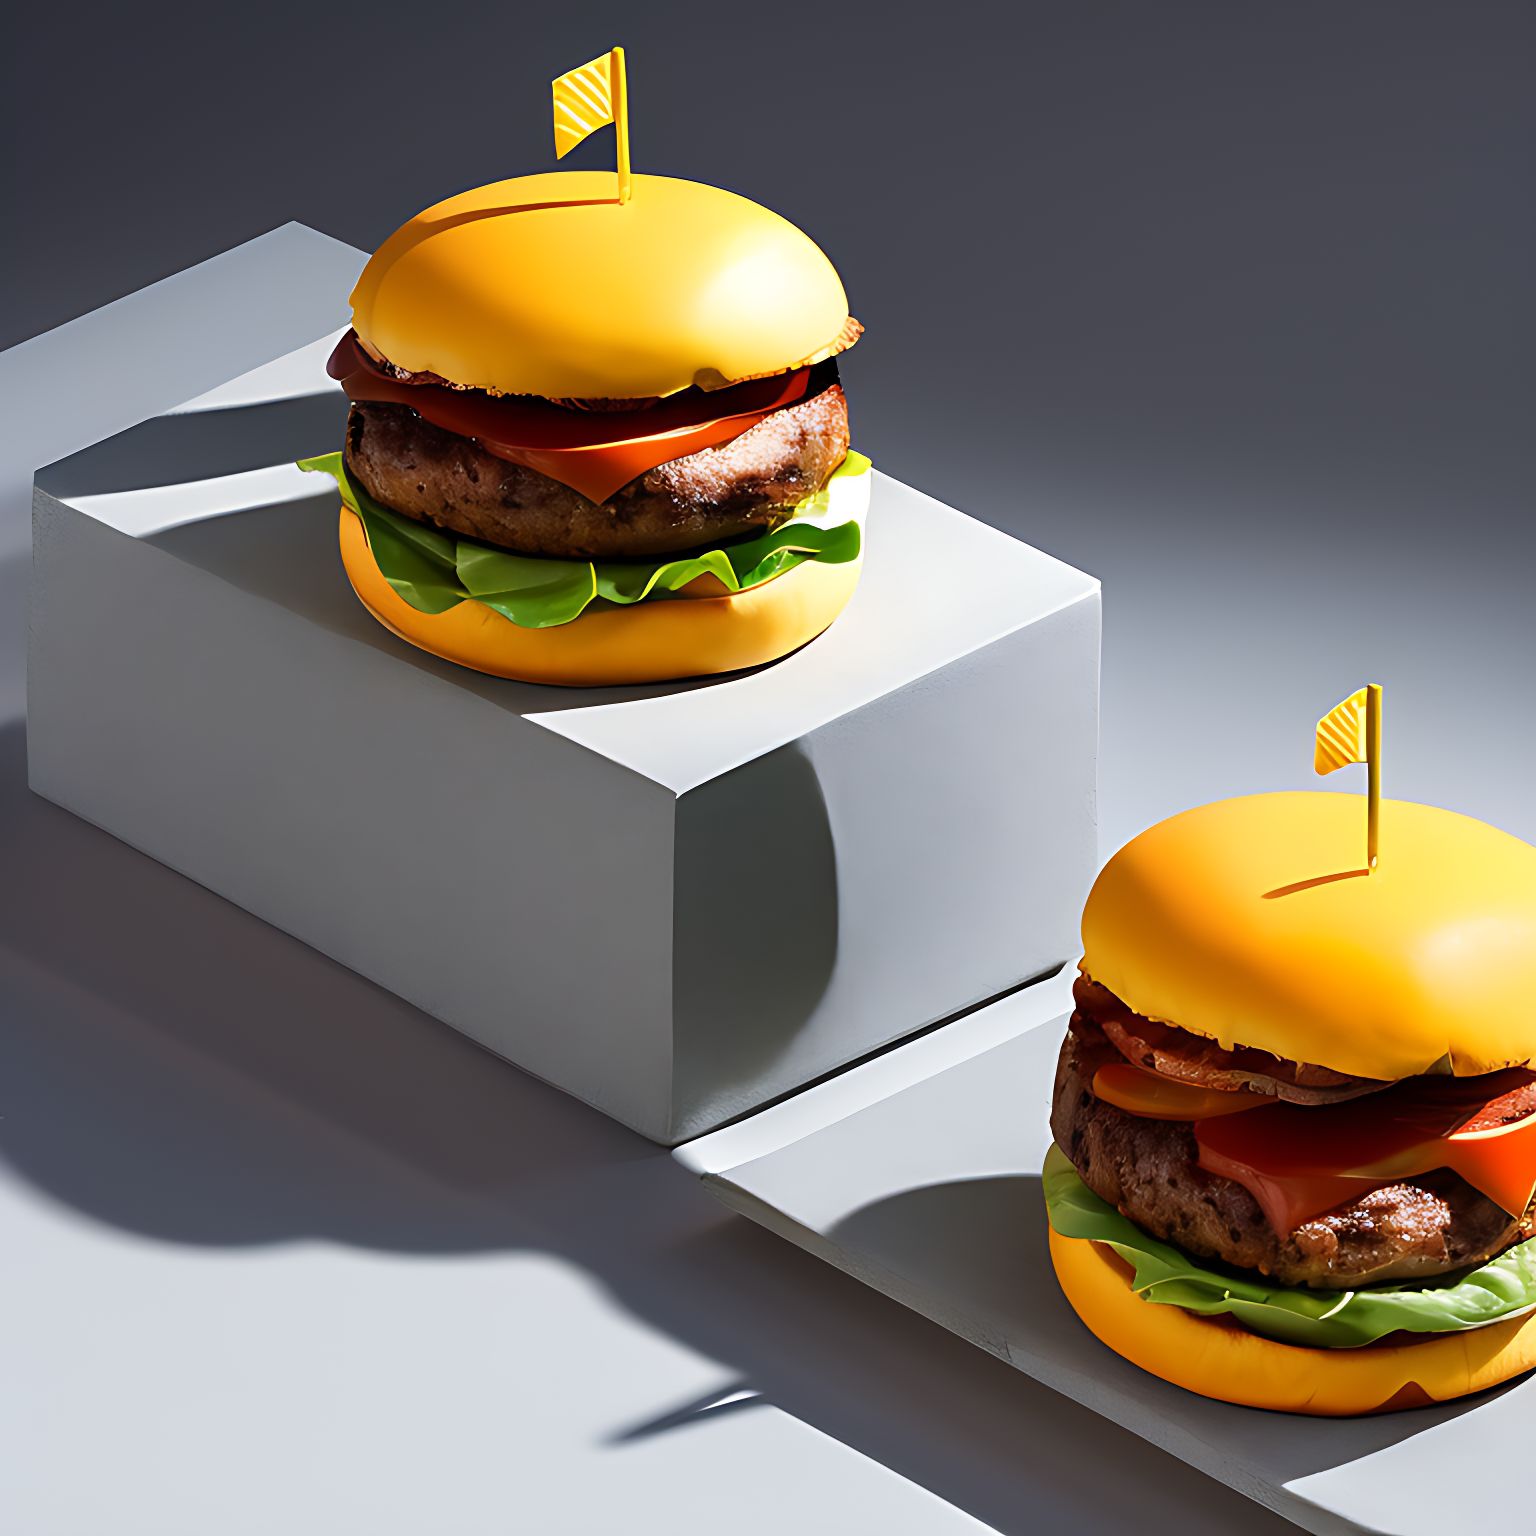 Burger - một trong những món ăn nhanh phổ biến trên toàn thế giới. Hình ảnh burger thơm ngon và hấp dẫn sẽ khiến bạn muốn thưởng thức liền một chiếc burger ngay lập tức. Hãy khám phá những loại burger đáng thử và tìm cho mình cảm giác thư giãn nhất khi thưởng thức một bữa ăn fast-food!